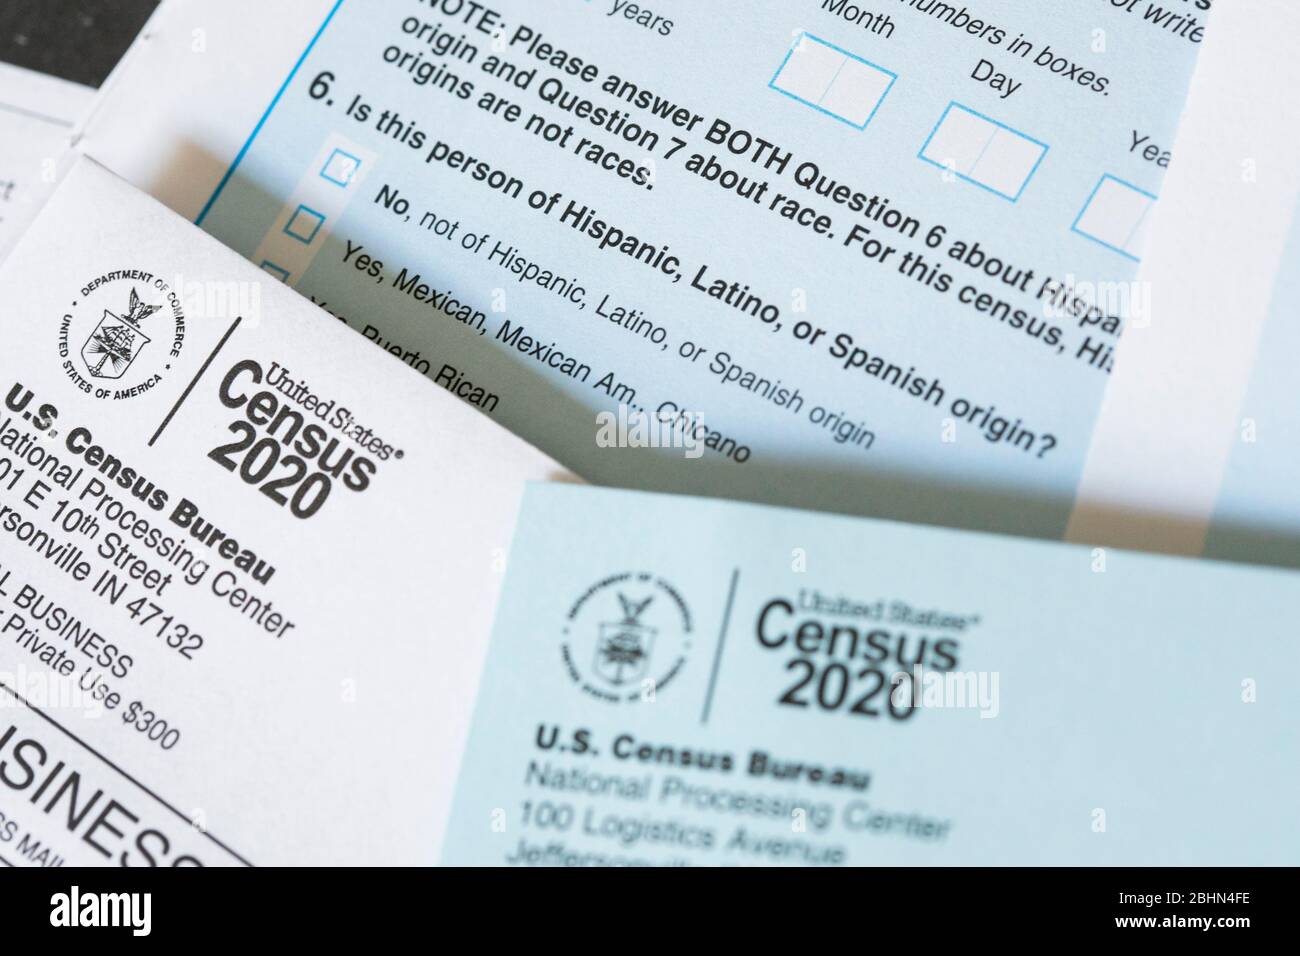 Ein Foto der Fragebogen-Frage des US-Zensus 2020 über hispanische, lateinamerikanische oder spanische Herkunft. Stockfoto